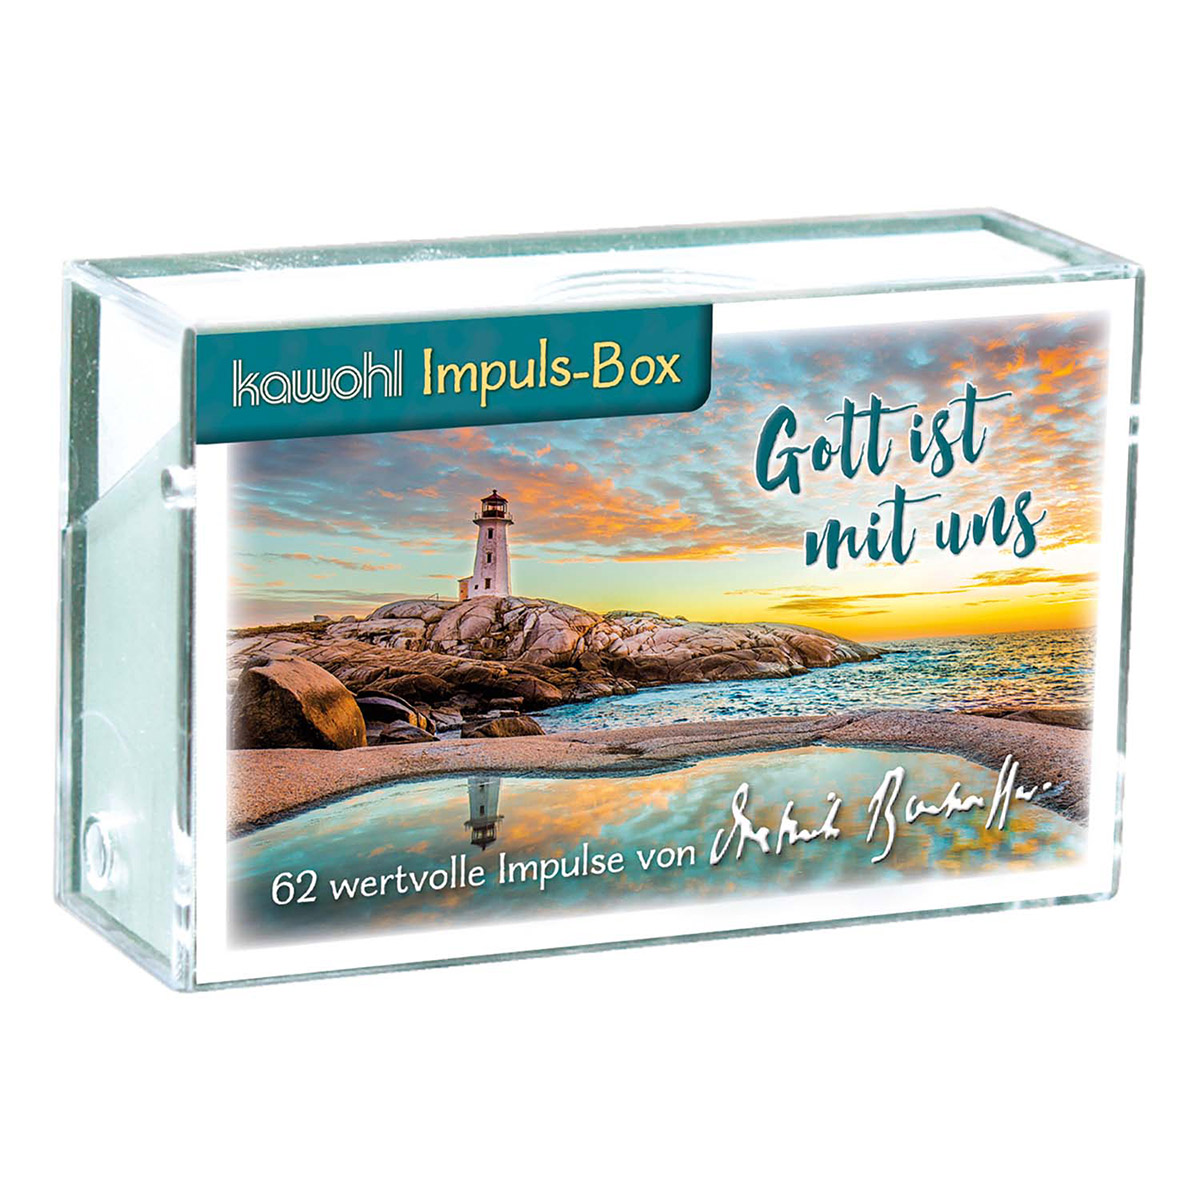 Impulsbox »Gott ist mit uns« von Kawohl-Verlag